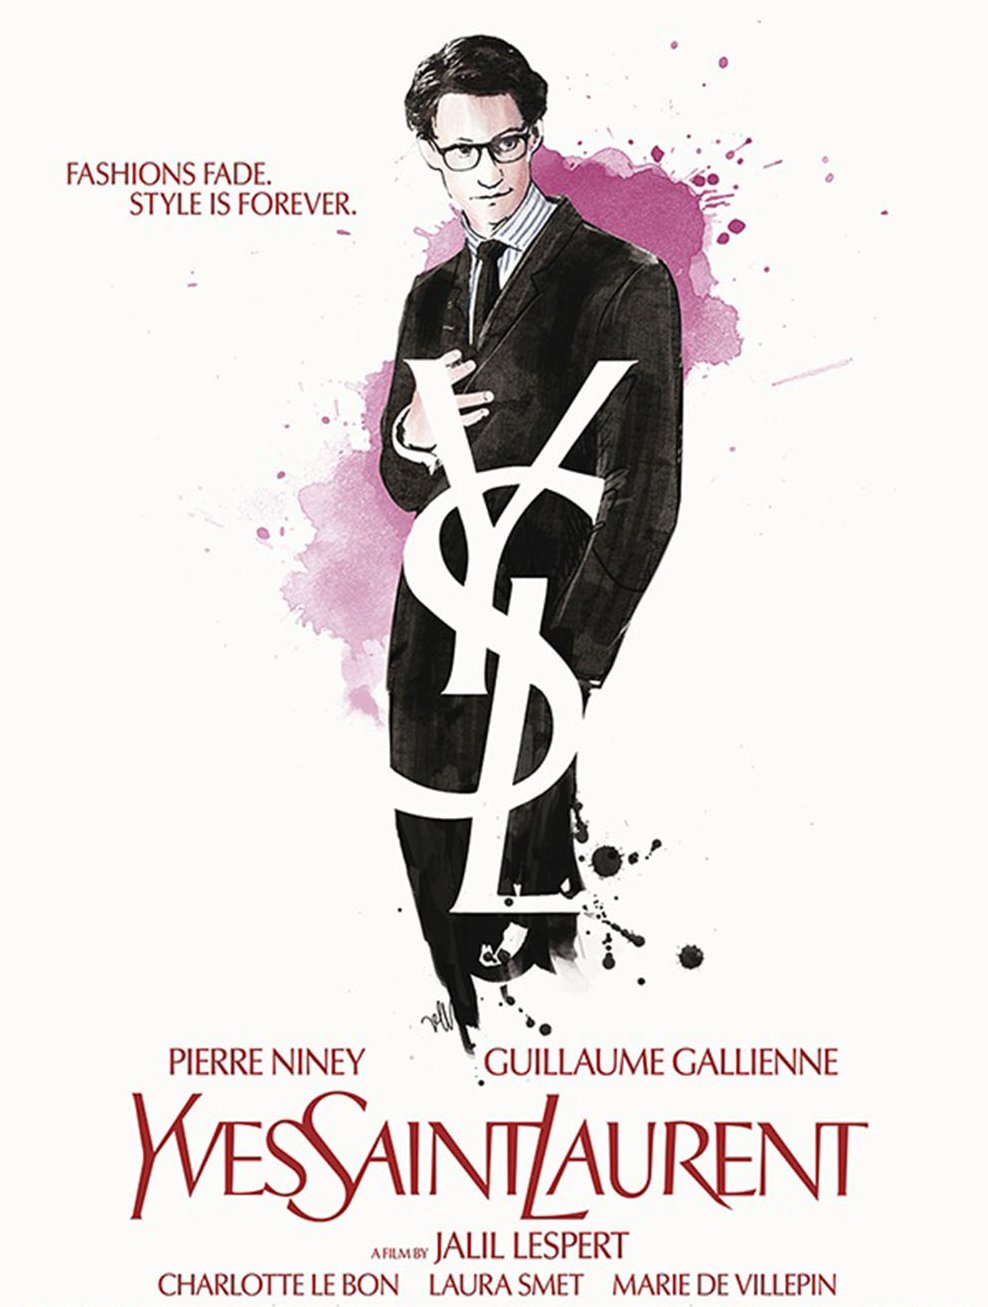 Yves Saint Laurent Movie Poster Google image from http://cdn1.thr.com/sites/default/files/2014/03/yves_saint_laurent_poster_p_2014.jpg